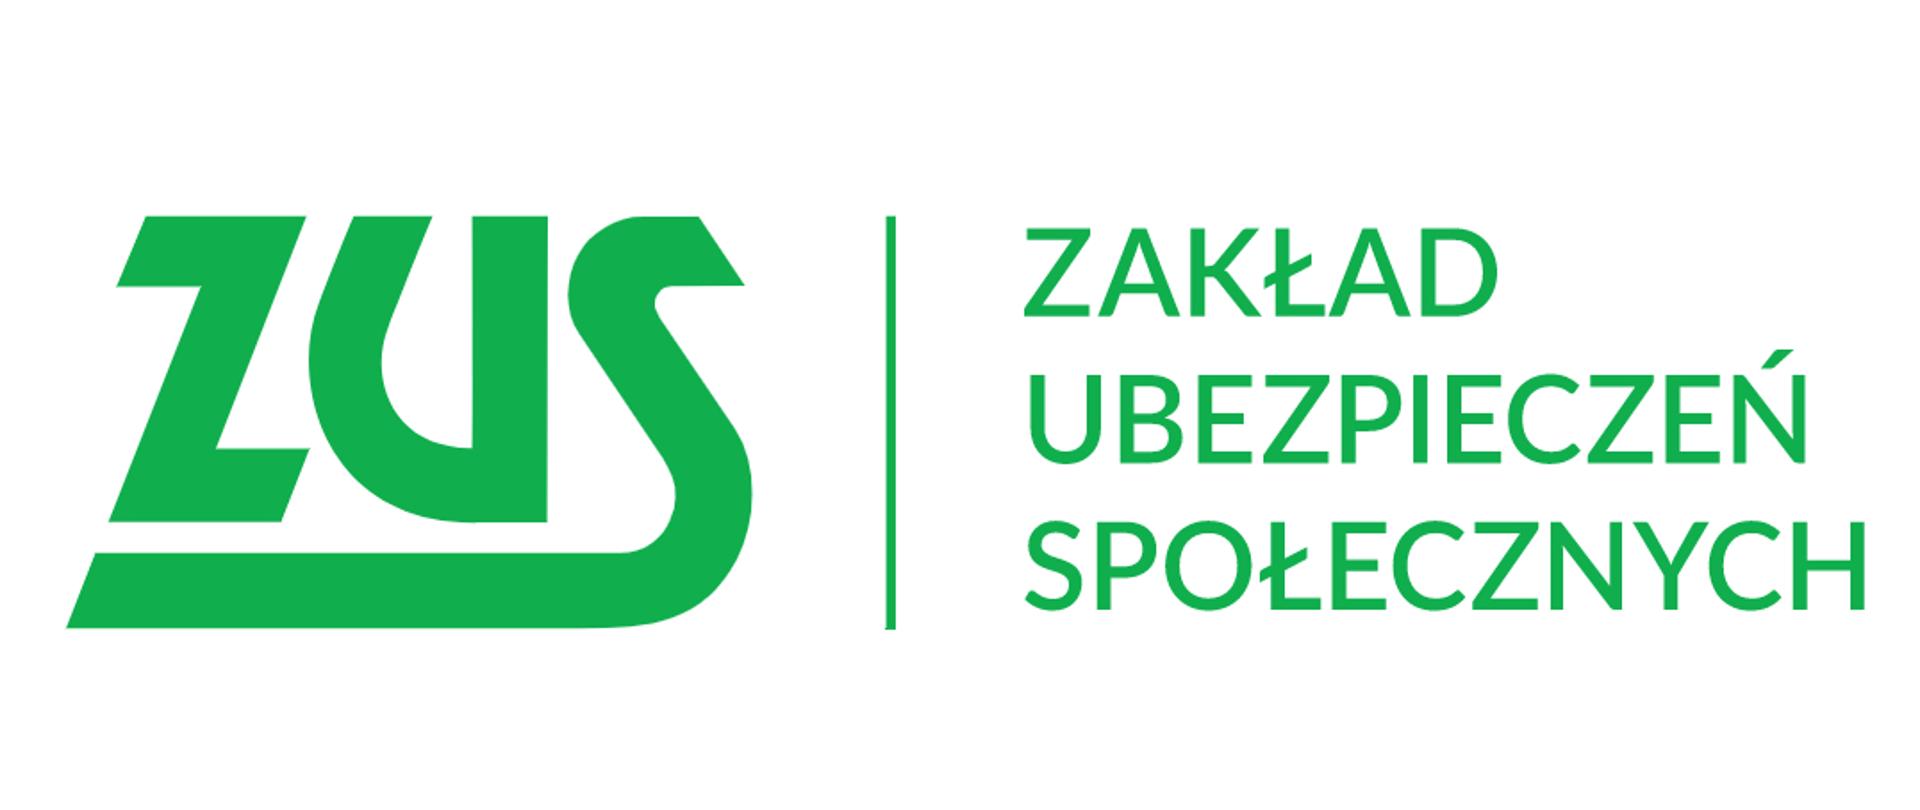 Logotyp w kolorze zielonym, po lewej stronie duży skrót ZUS pionowa zielona kreska i po prawej napis w trzech wierszach Zakład Ubezpieczeń Społecznych